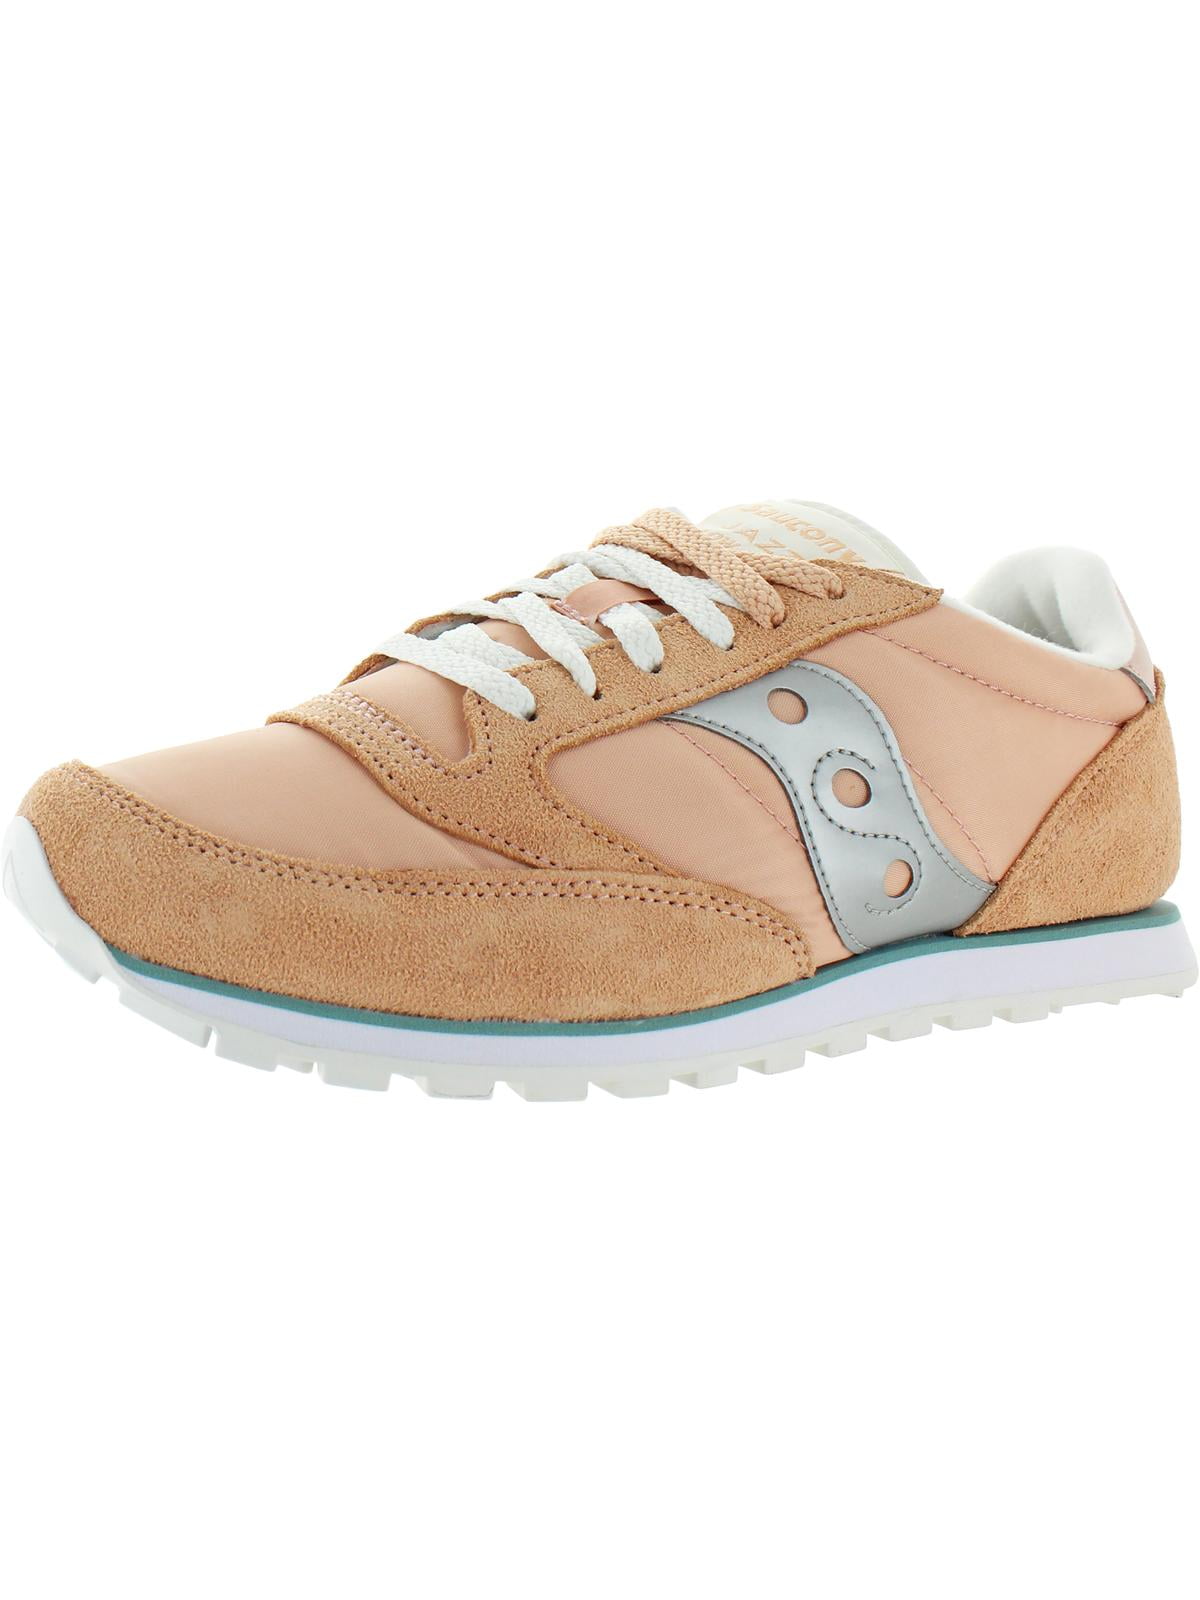 Size 10 M Saucony Jazz Lowpro Women's Sneaker Peach/Blue/Silver 